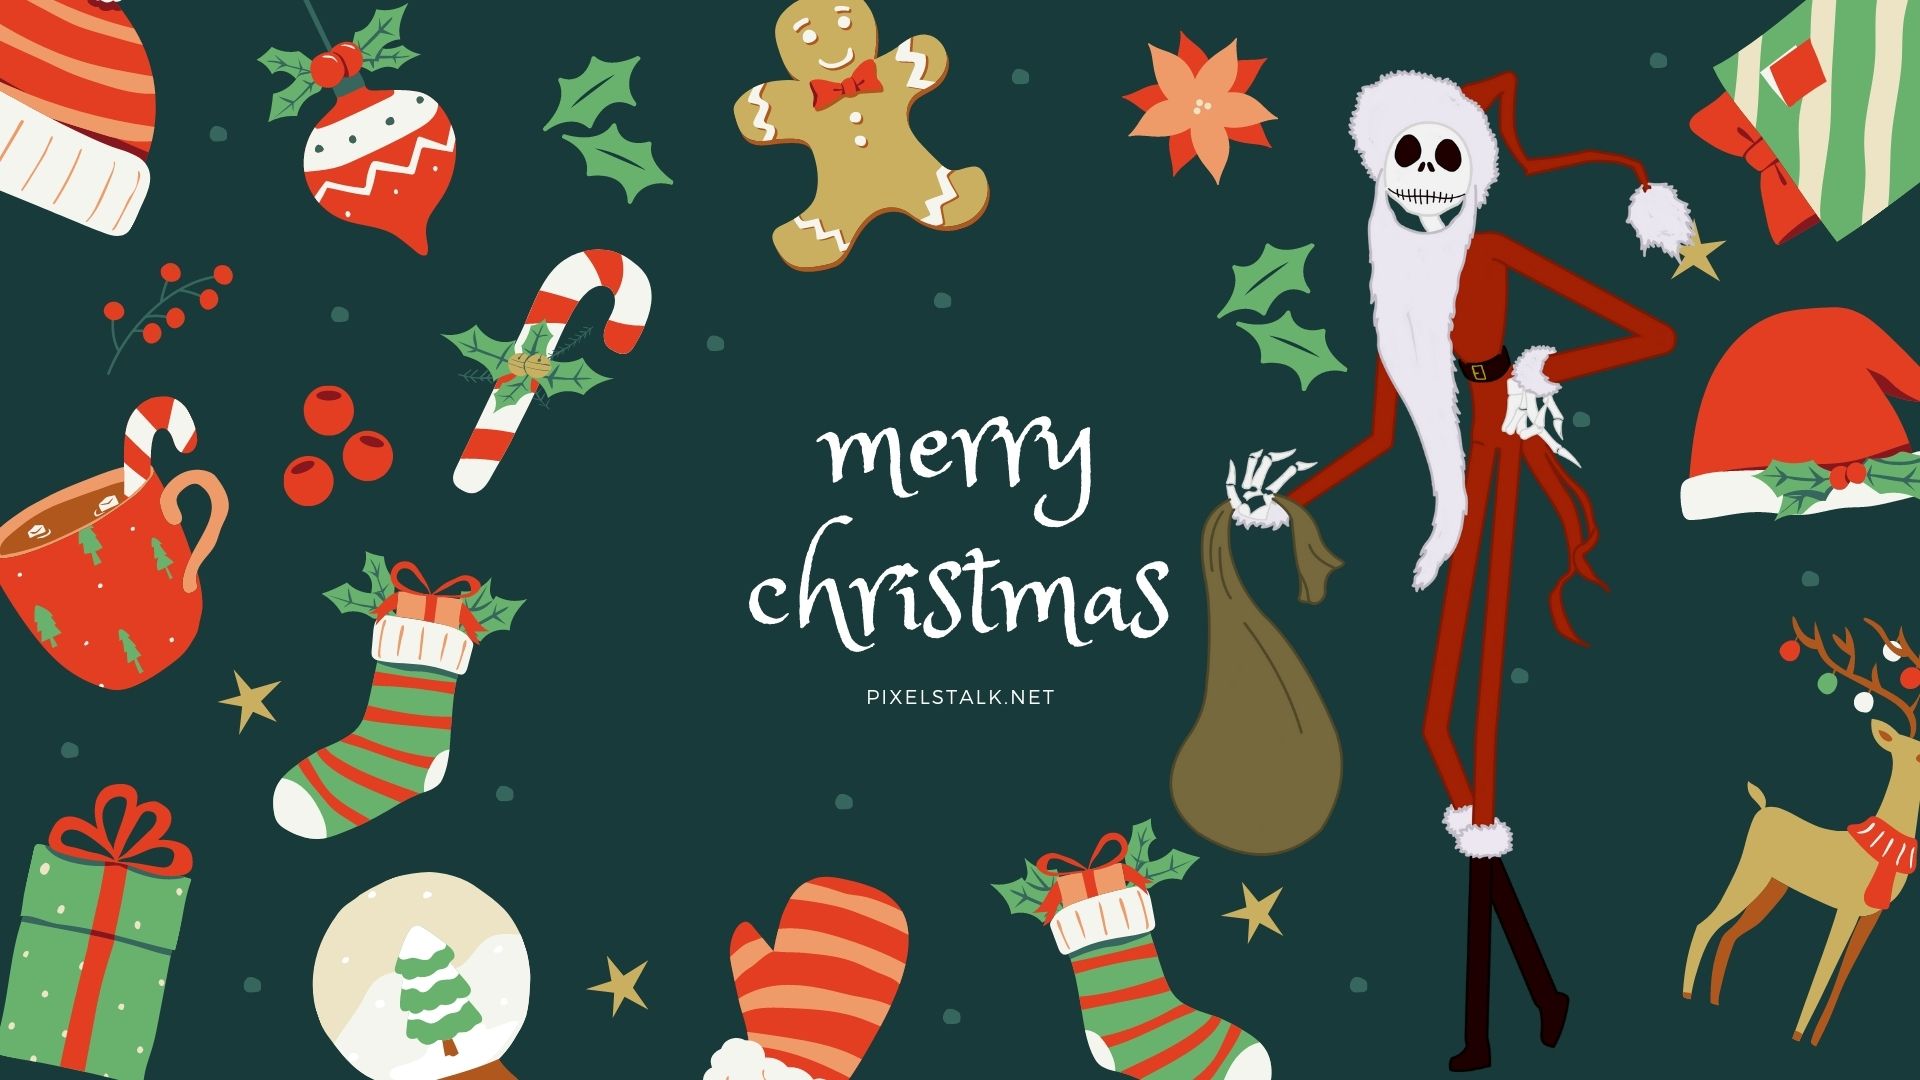 Tham gia bộ sưu tập ảnh nền HD The Nightmare Before Christmas trên PixelsTalk.Net để khám phá thế giới đầy lãng mạn và kinh dị của huyền thoại kết hợp Giáng sinh và Halloween. Tất cả đều được thiết kế cực kỳ độc đáo và tinh tế, sẽ là món quà tuyệt vời cho những fan hâm mộ phim này.